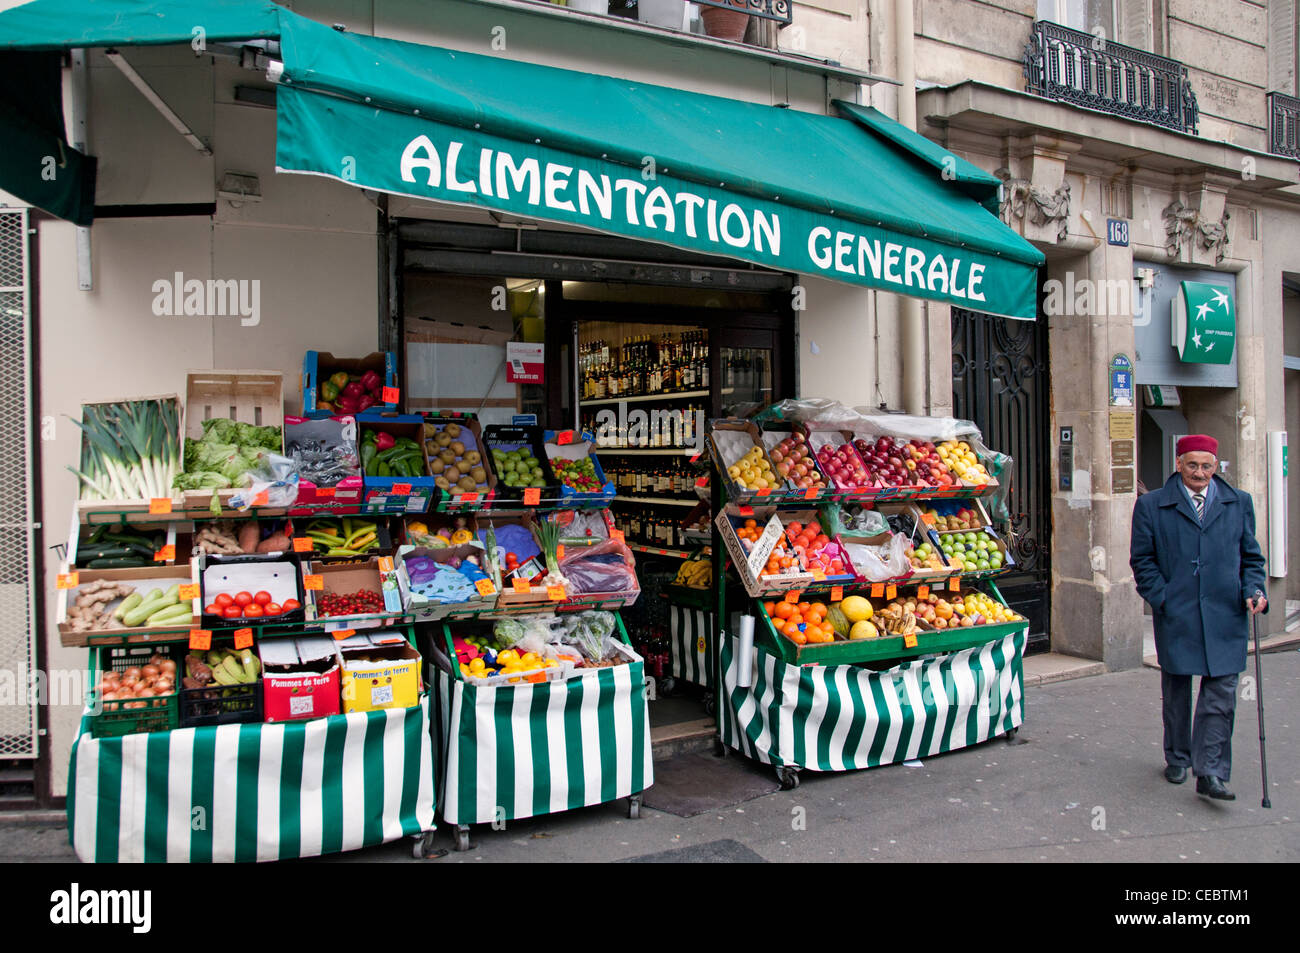 Alimentation Generale Buttes Chaumont - Menilmont Parigi Francia drogheria drogheria parigi francia - francese Foto Stock